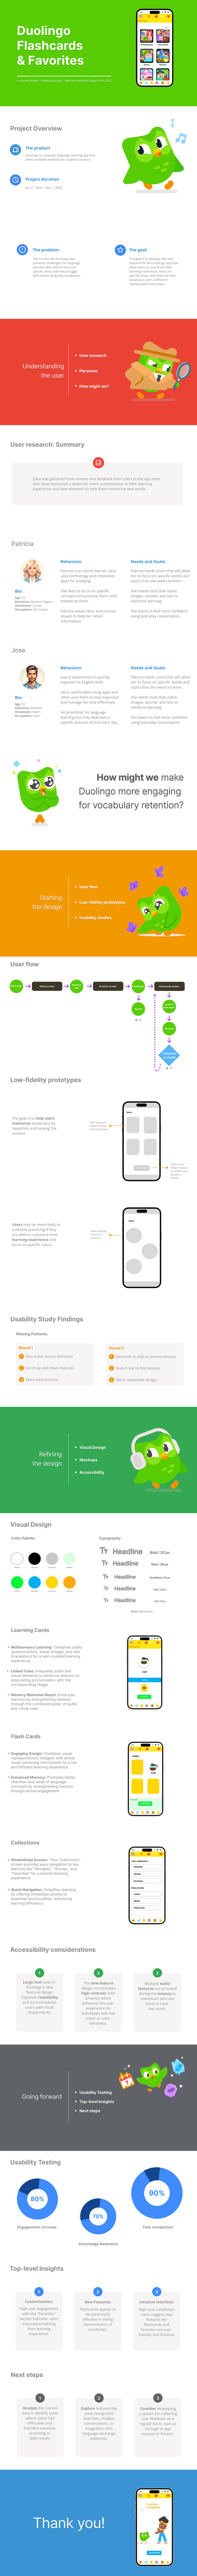 UX design UX Case Study ui design app design Case Study Mobile app ux/ui duolingo redesign